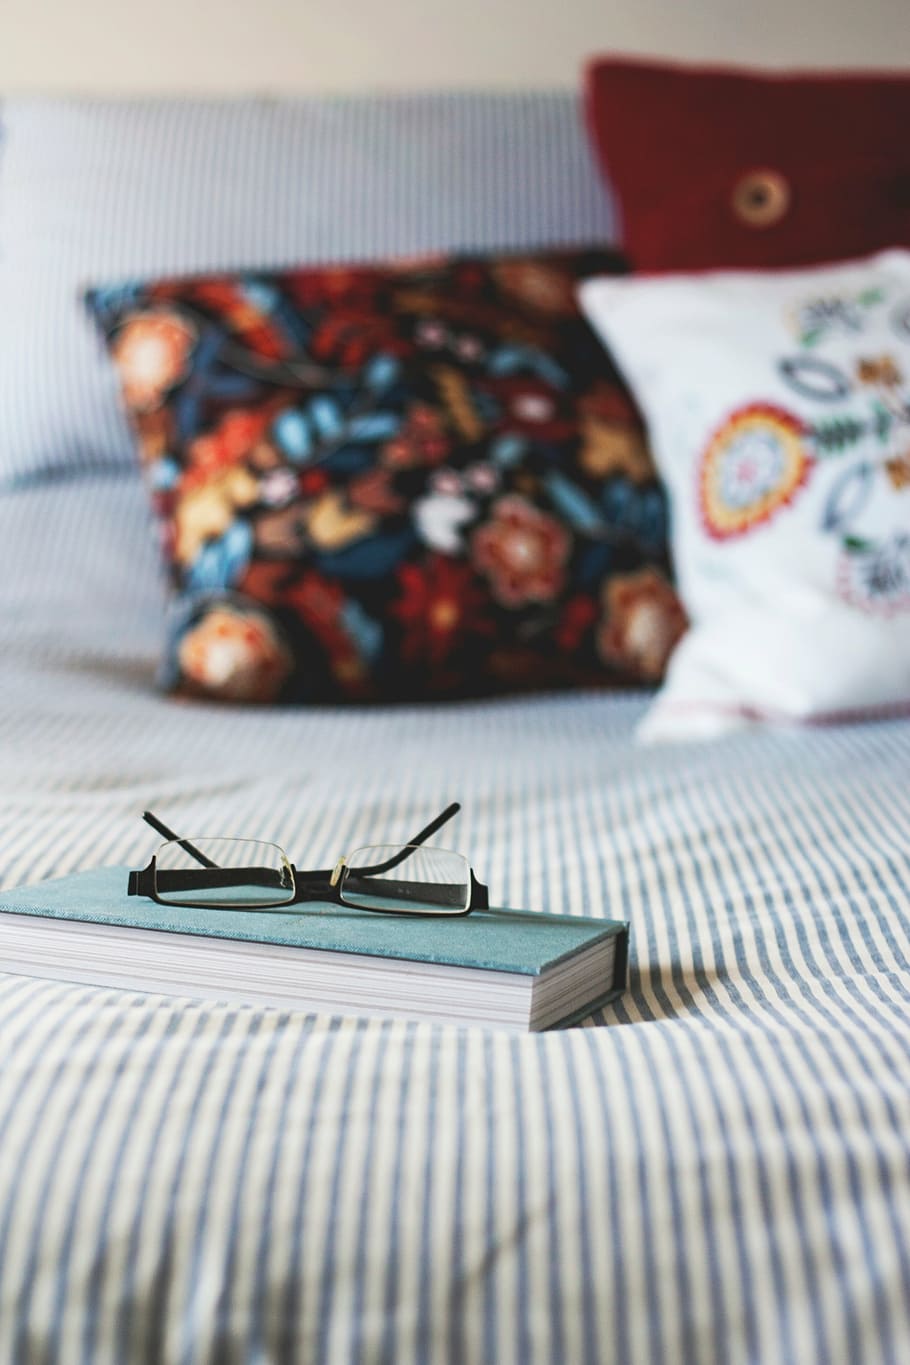 eyeglasses on book, black, frame, eyeglasses, blue, hard, bound, book, bedroom, bed